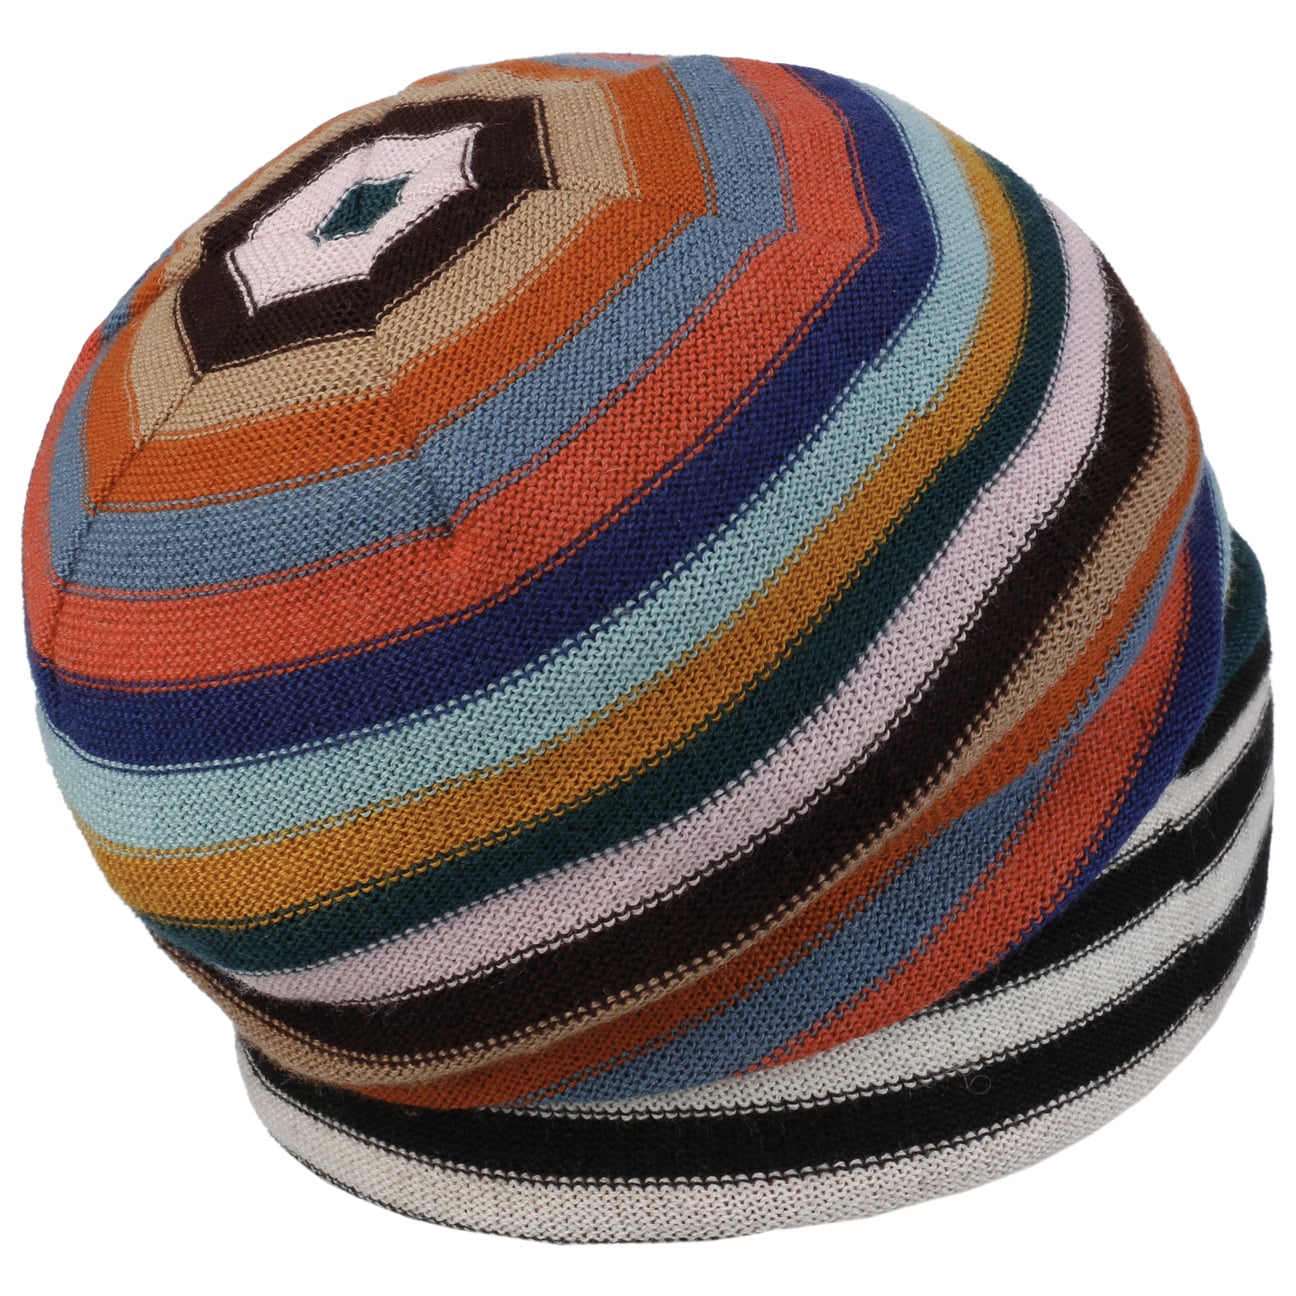 Bonnet en Laine Colour Stripes by bedacht - 79,95 €